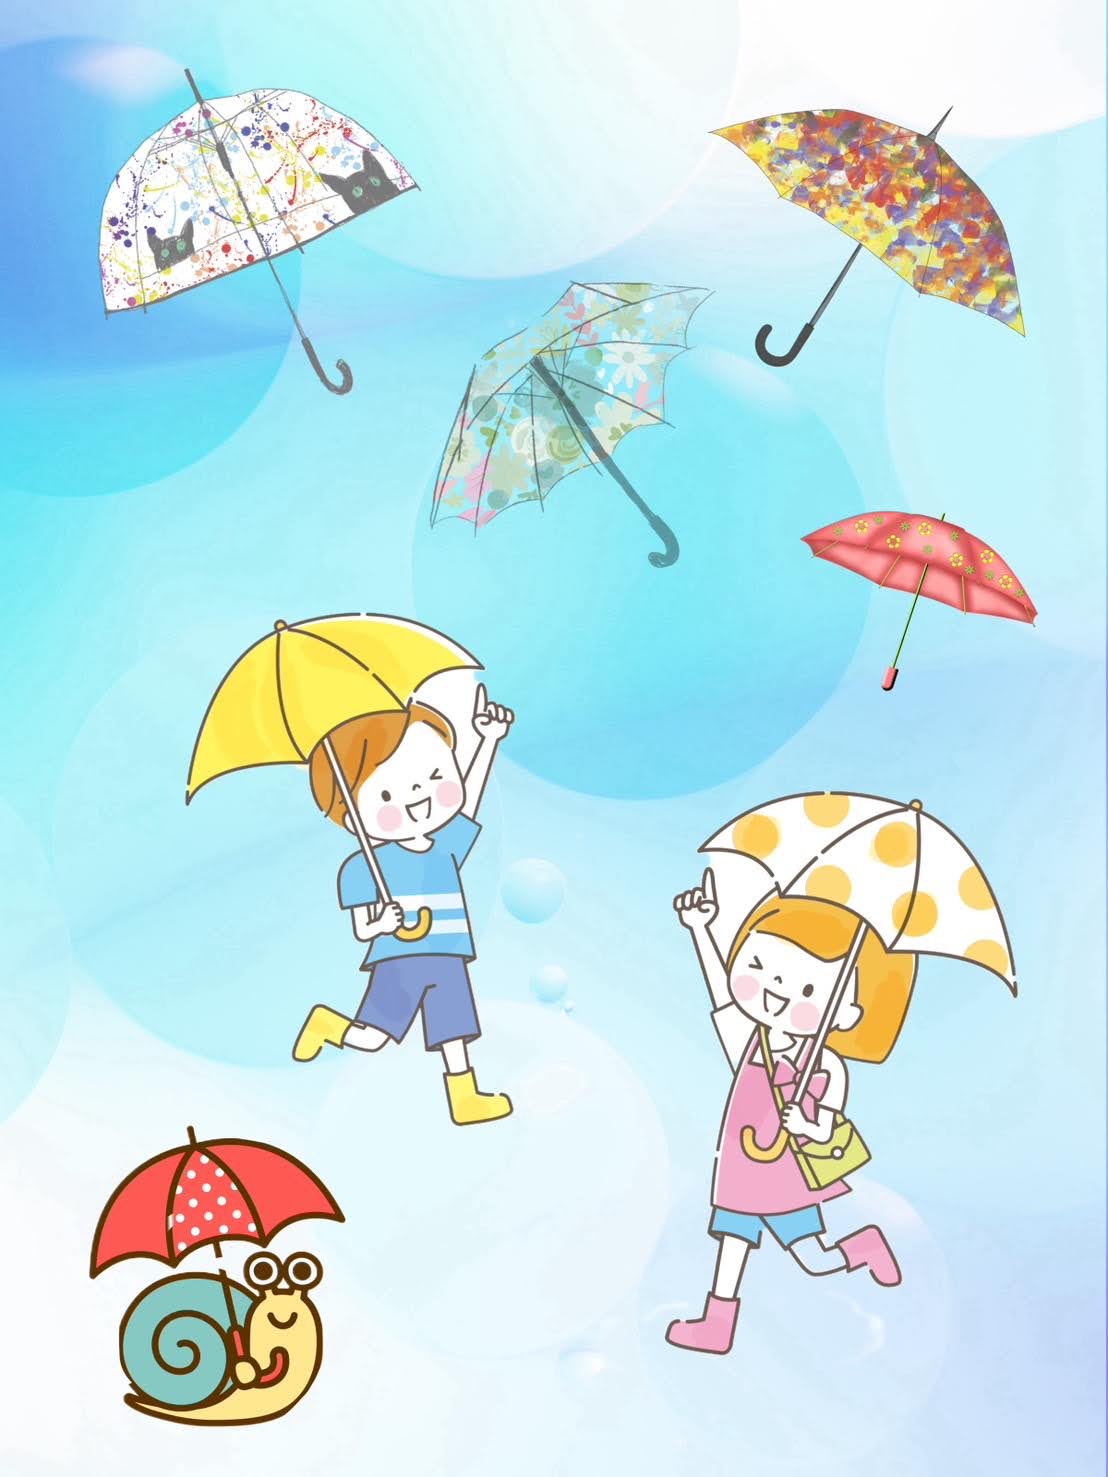 『世界にひとつの傘をつくろう！』